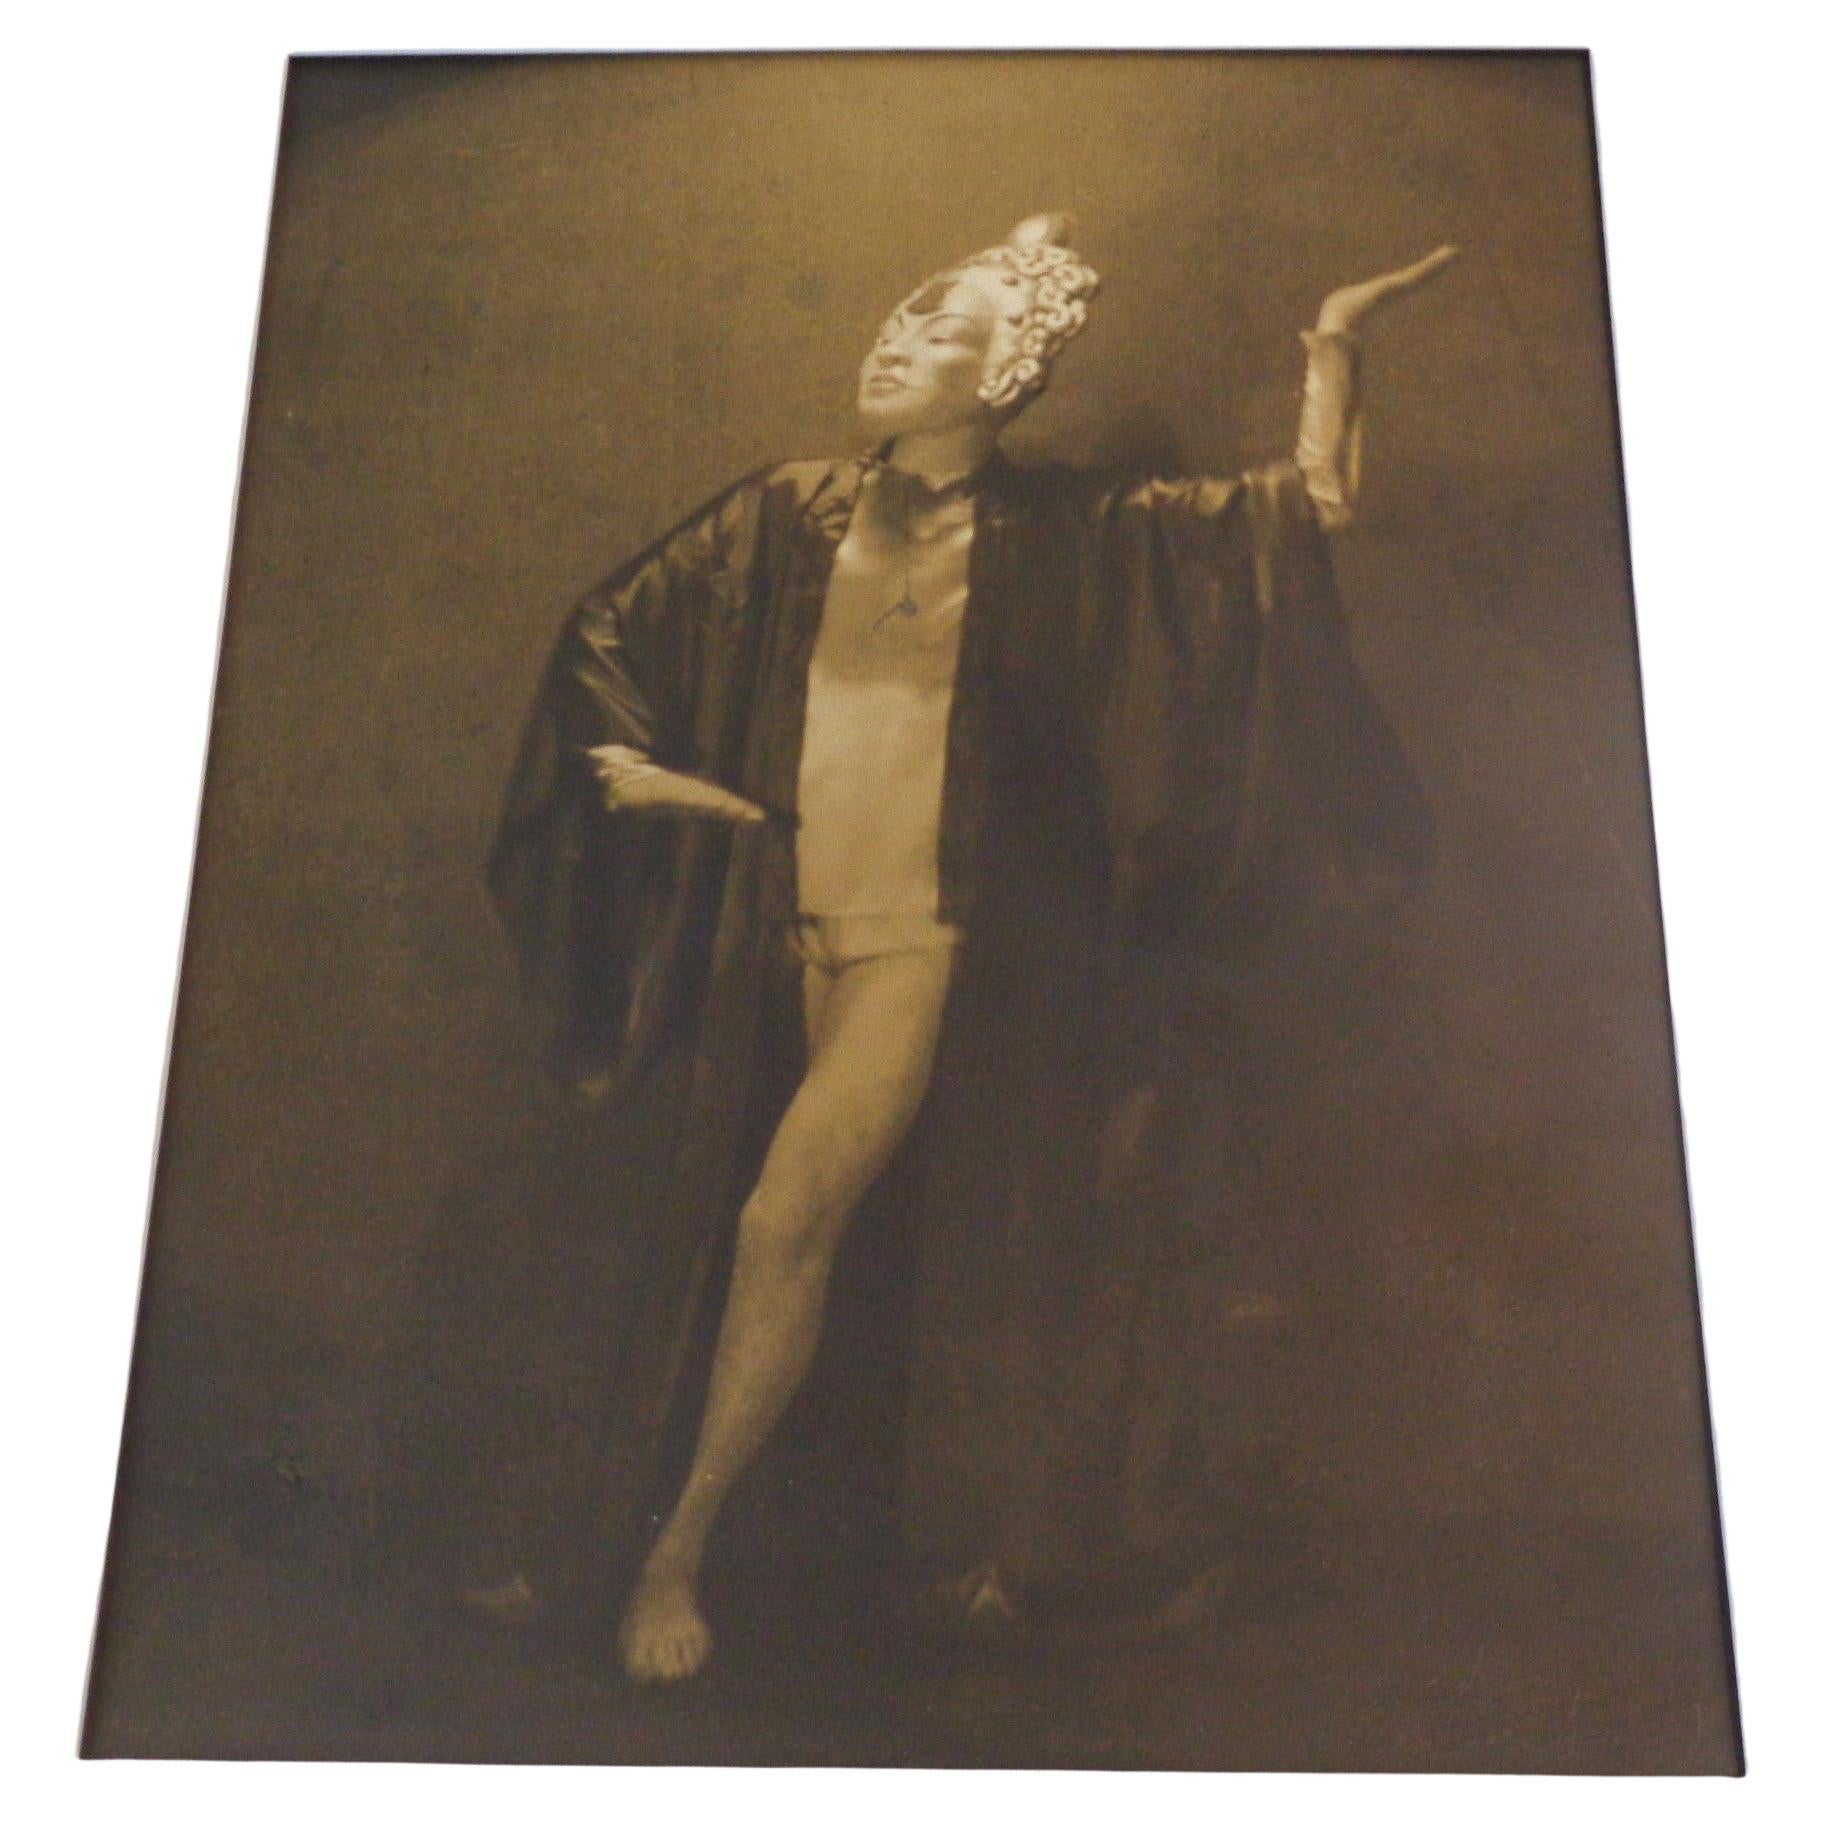 Original Pictorialistische Sepia Tone Gelatinesilberdruck-Fotografie Exotische Tänzerin